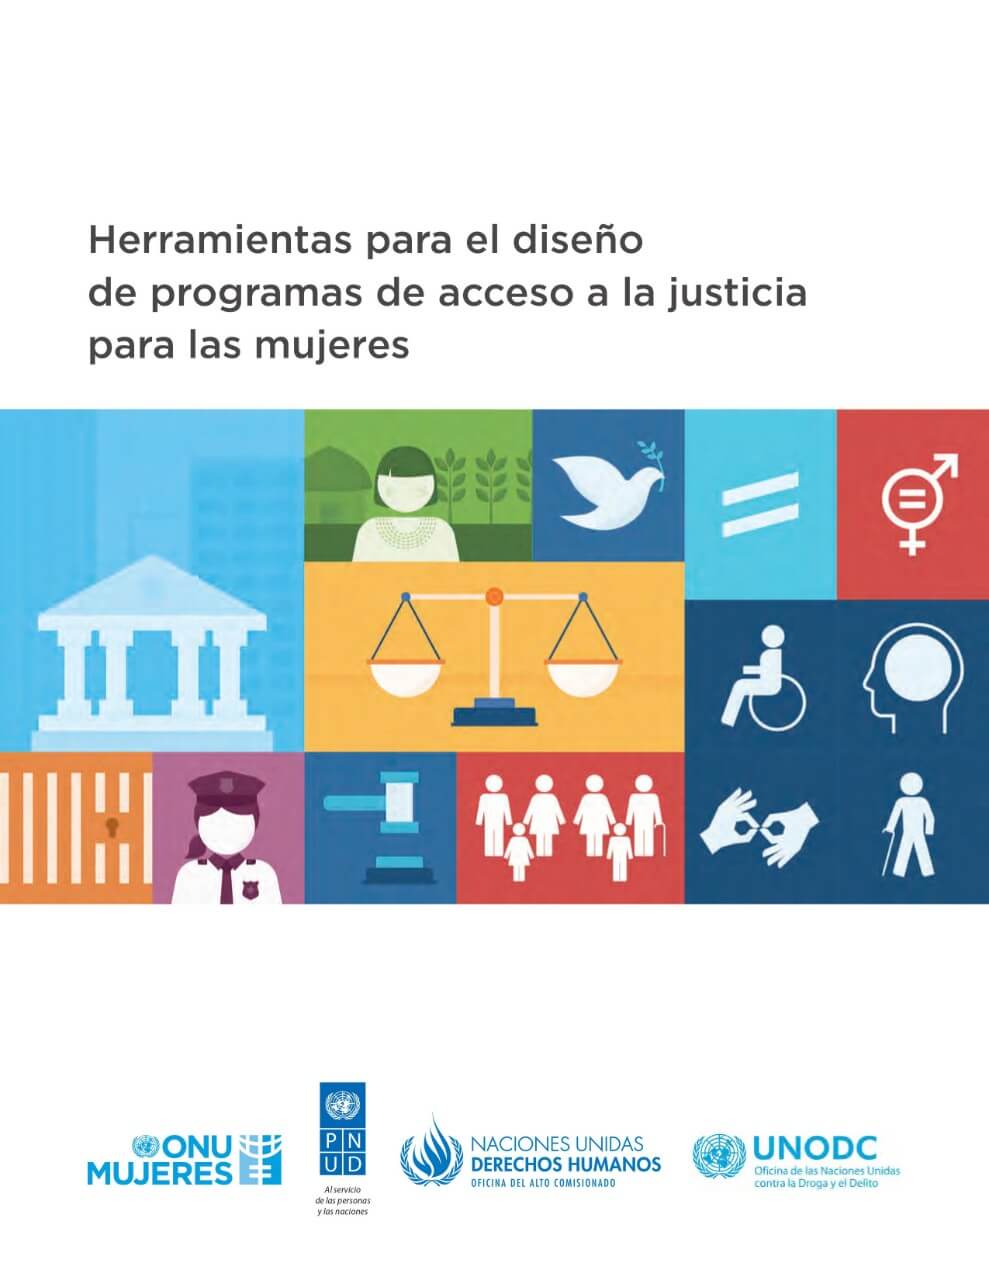 Herramientas para el diseño de programas de acceso a la justicia para las mujeres